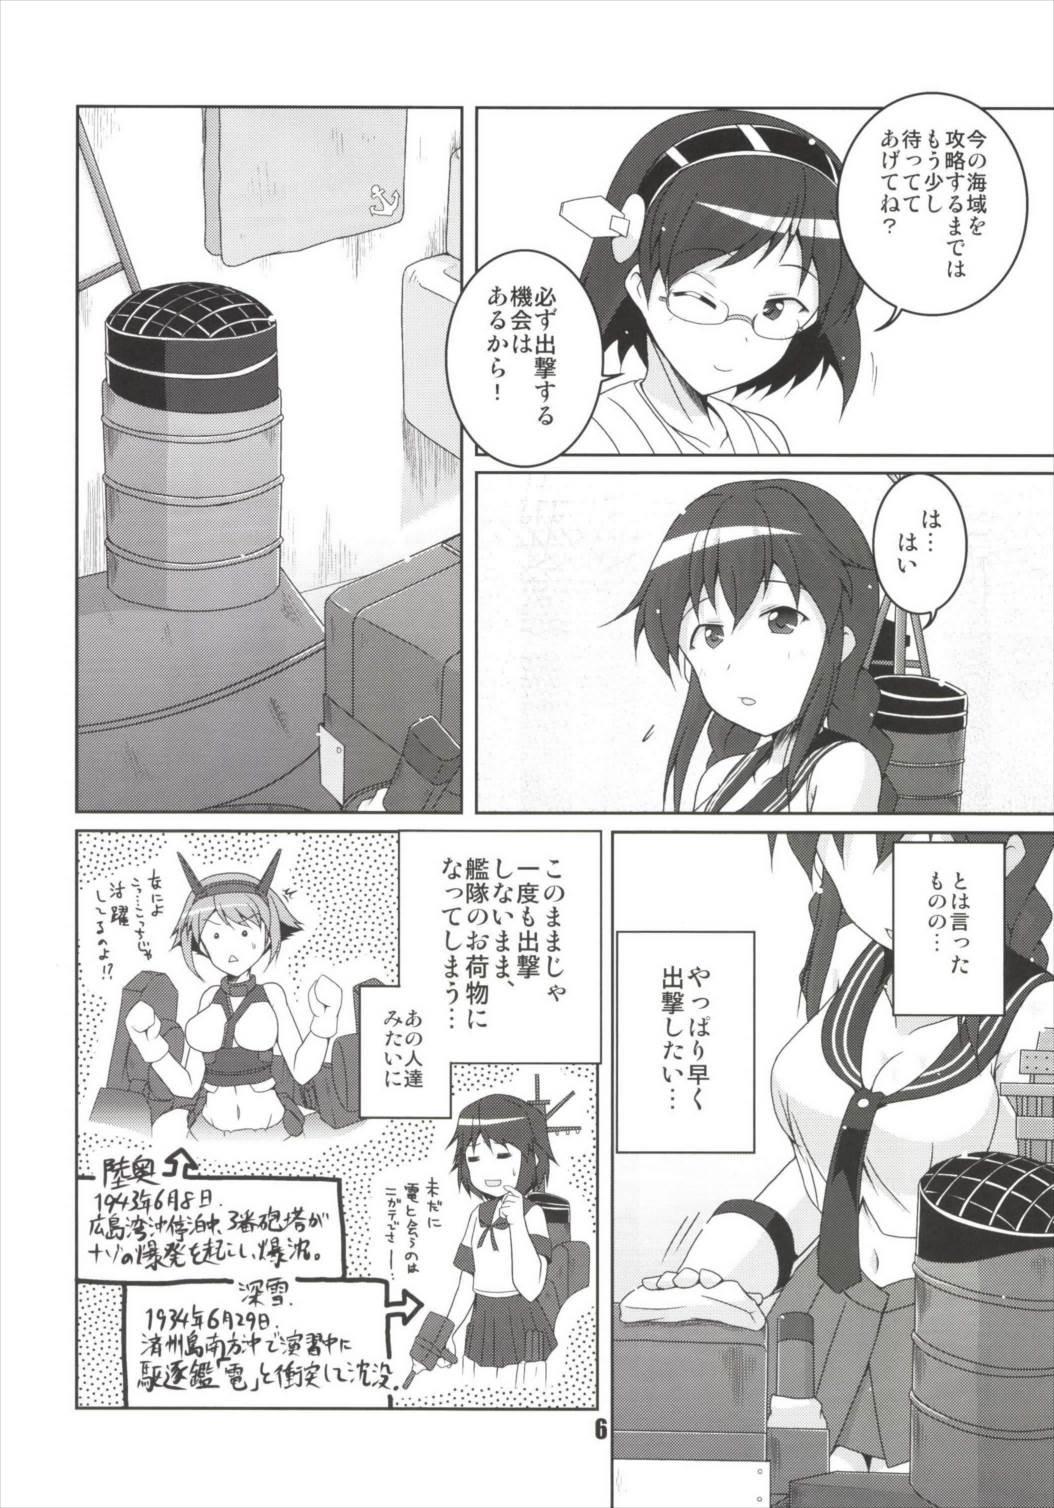 Weird Noshiro no Deban wa Mada desu ka? - Kantai collection Transgender - Page 6